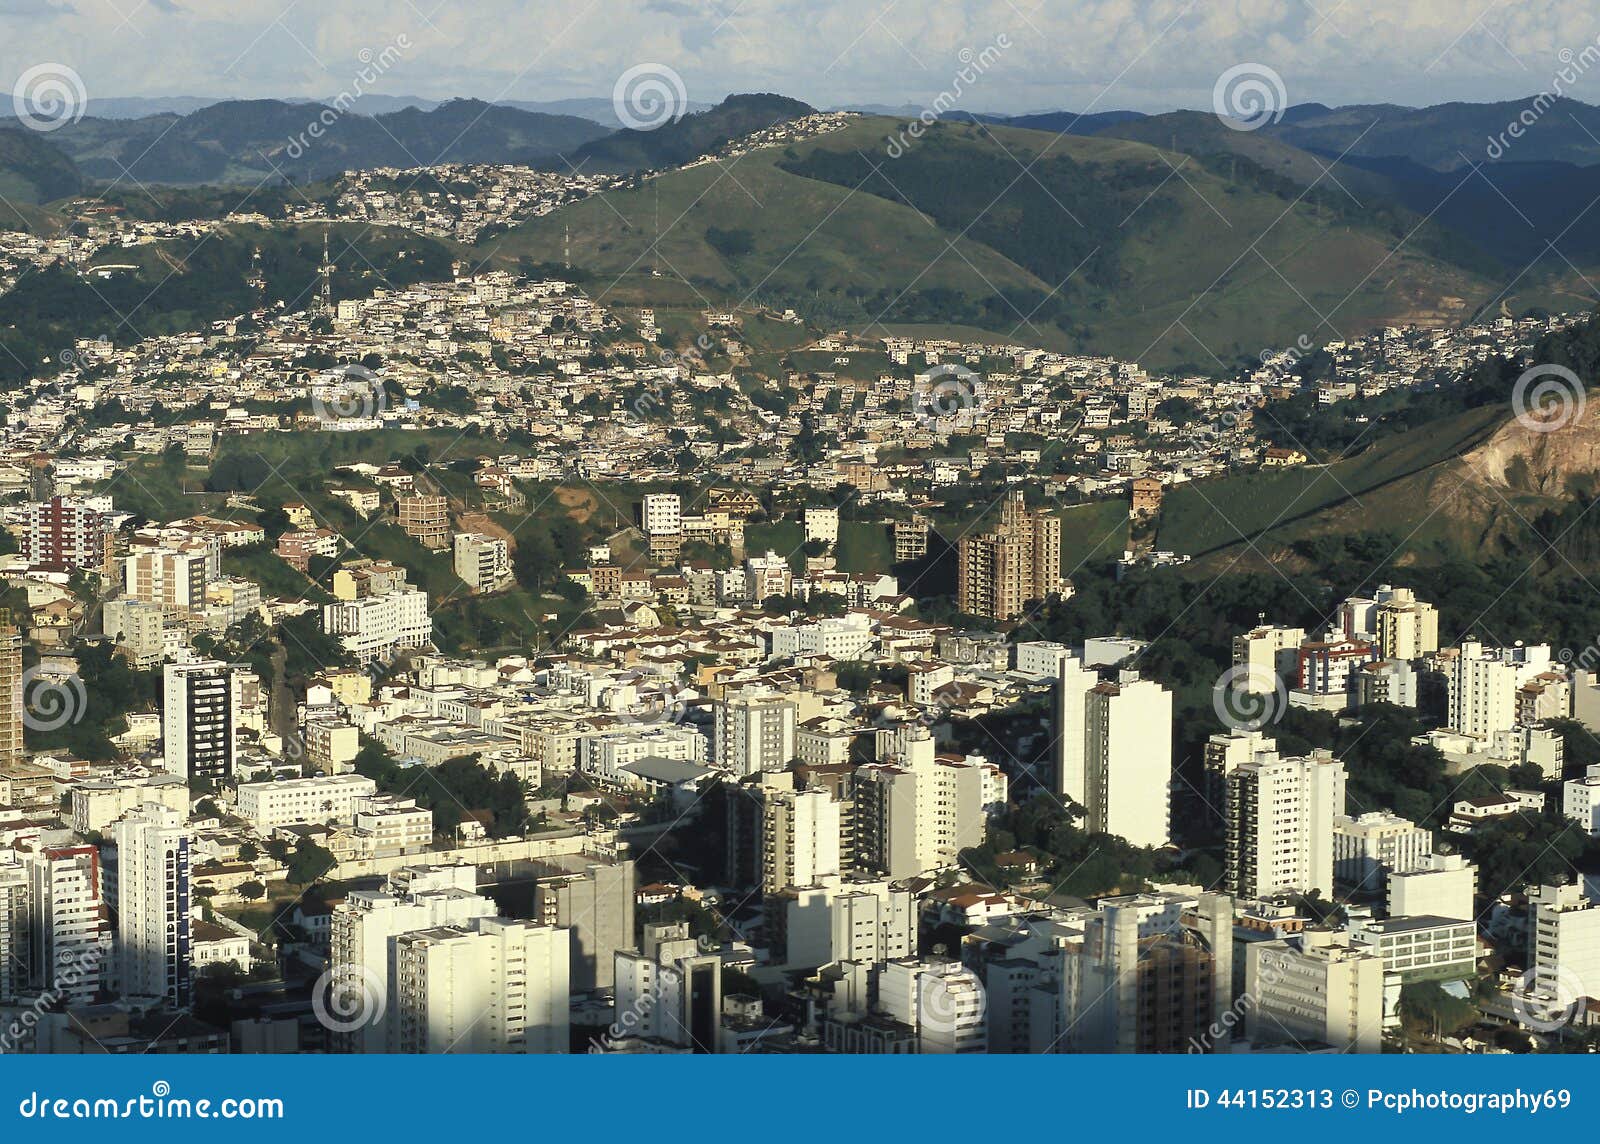 view of the city of juiz de fora, minas gerais, brazil.